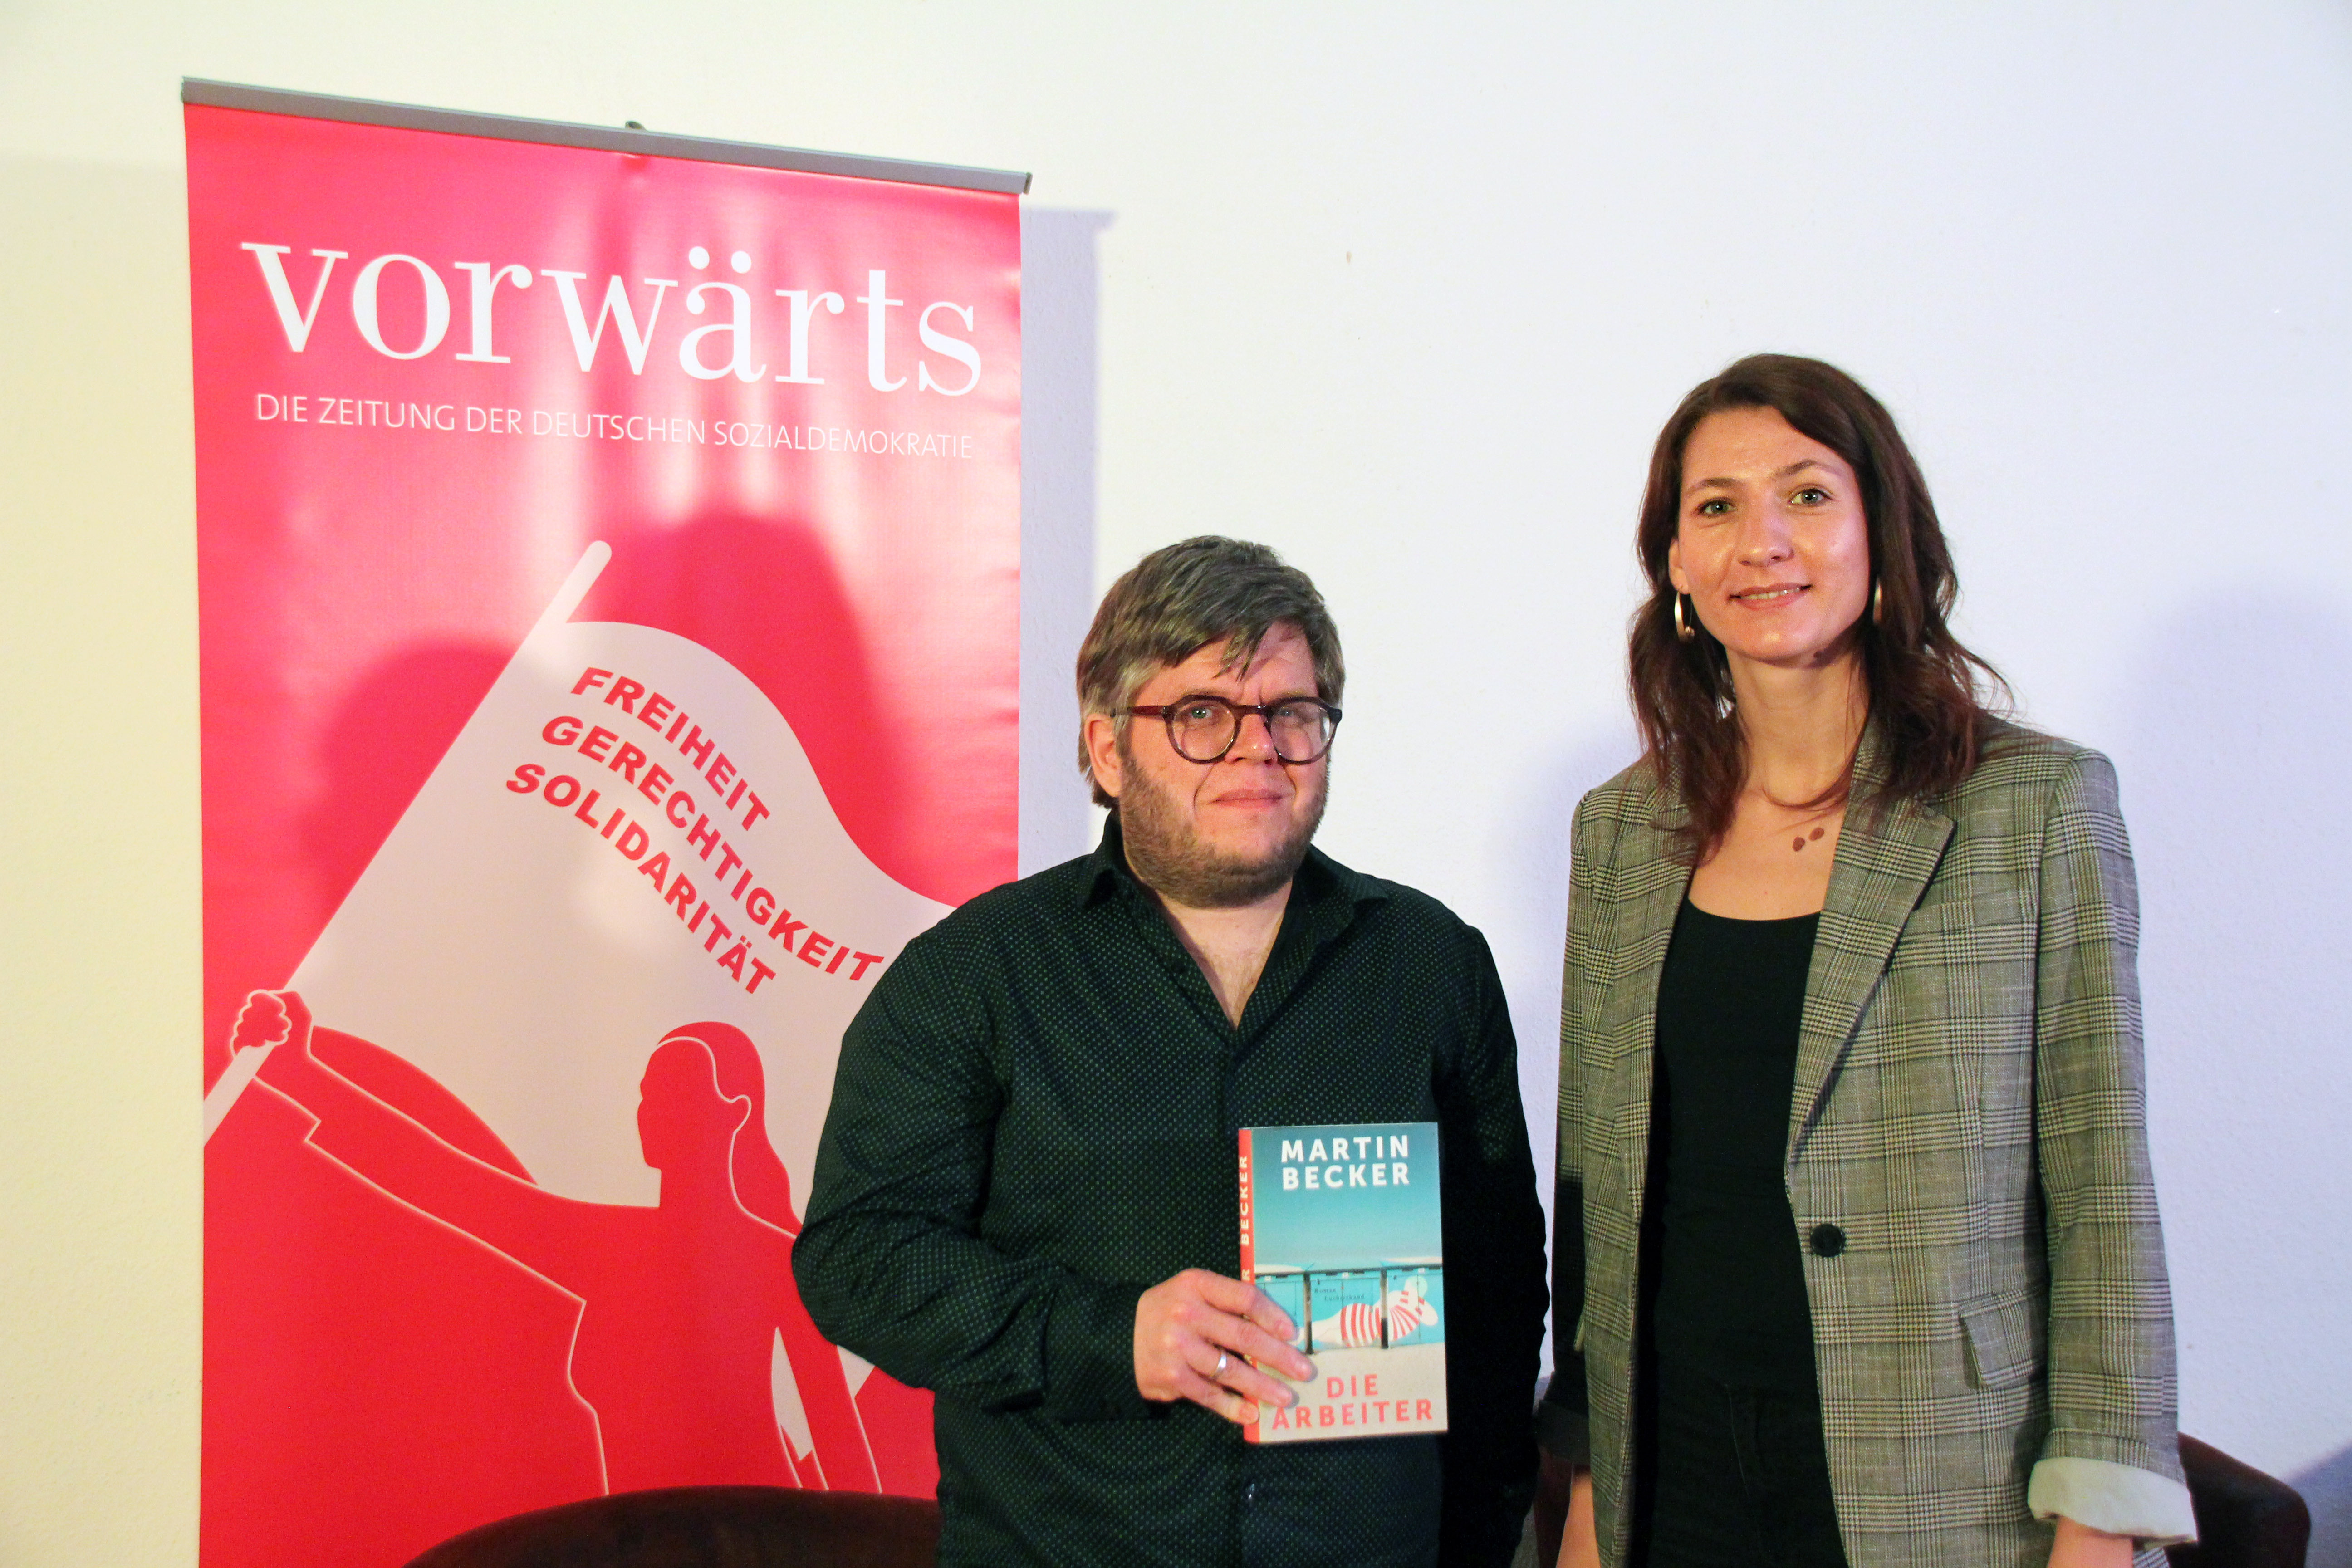 Die Leipziger SPD-Bundestagsabgeordnete Nadja Sthamer sprach im Rahmen der vorwärts-Reihe "Politik trifft Buch" mit Autor Martin Becker.